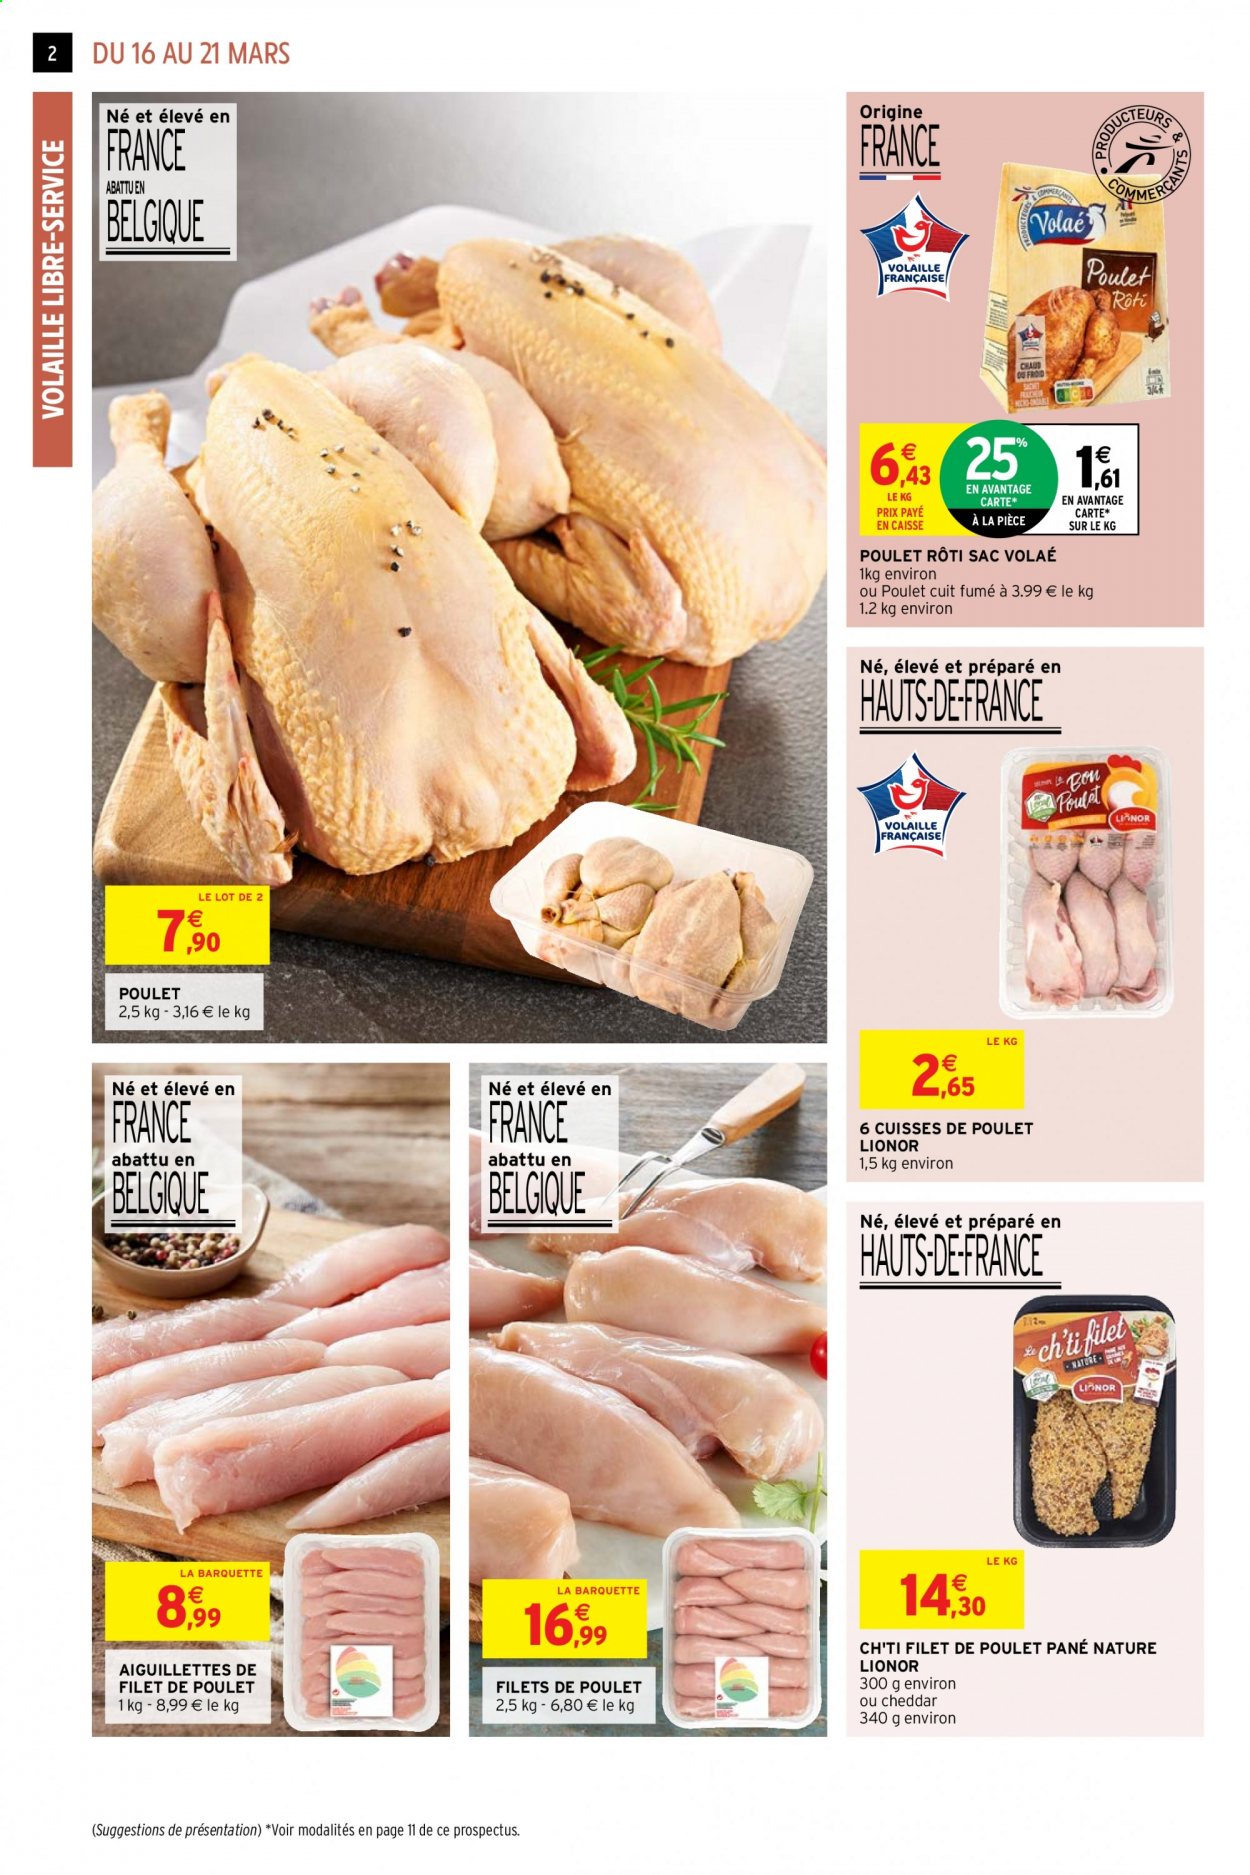 thumbnail - Catalogue Intermarché Hyper - 16/03/2021 - 21/03/2021 - Produits soldés - filet de poulet, cuisses de poulet, viande de poulet, poulet rôti, sac. Page 2.